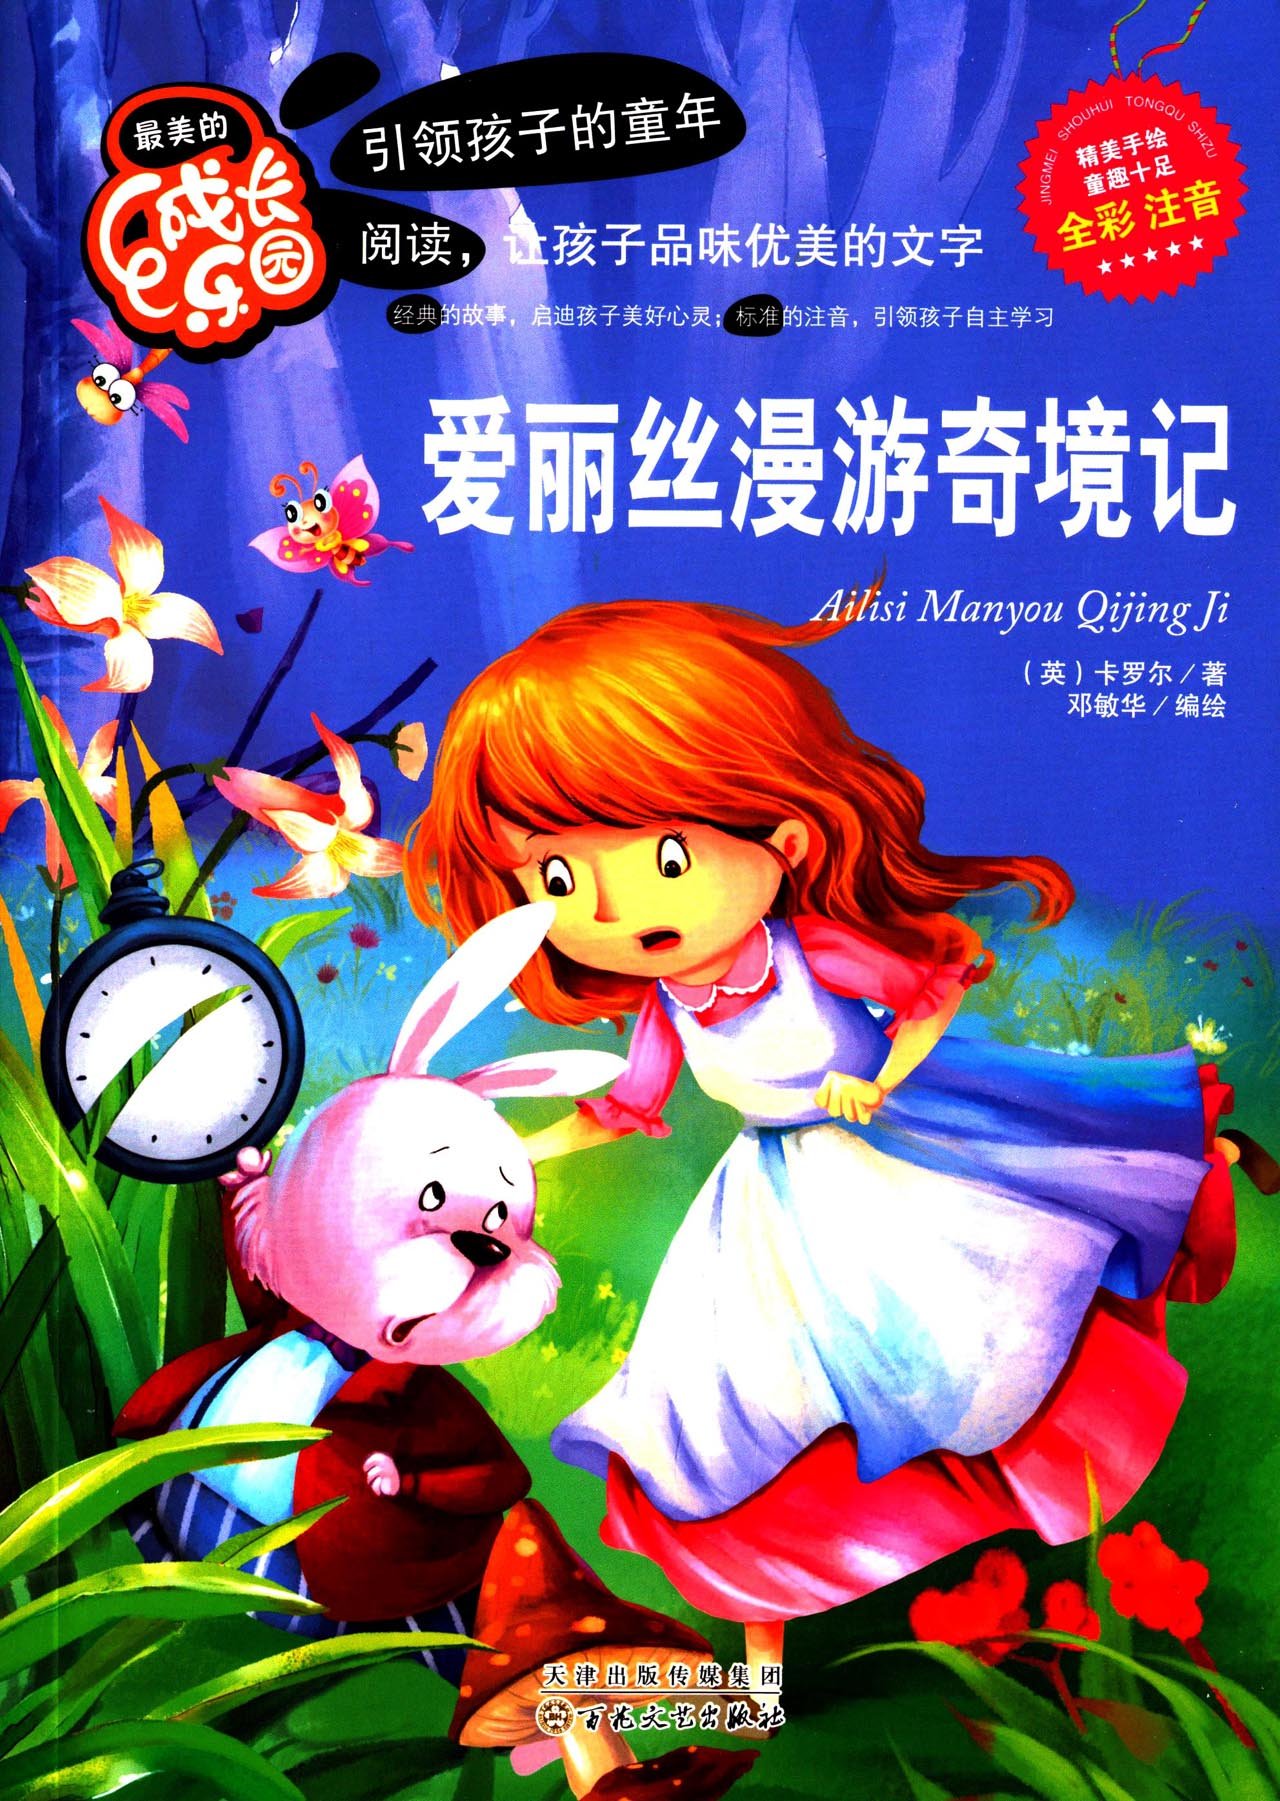 儿童童话故事MP3下载--爱丽丝漫游奇境2 - 童话之家-以爱之心做事,感恩之心做人!